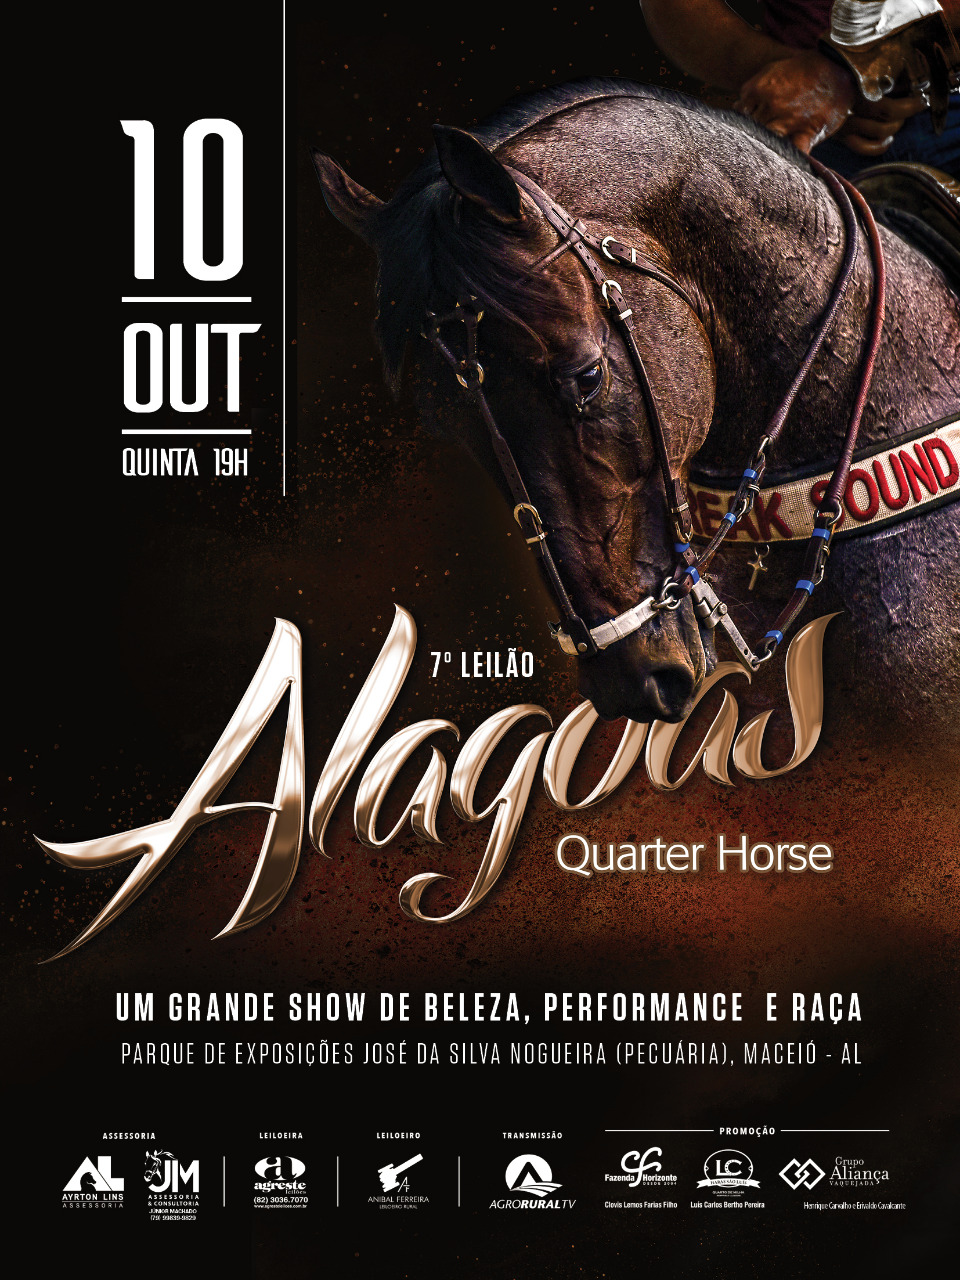 Catálogo do 7º Alagoas Quarter Horse está disponível na internet